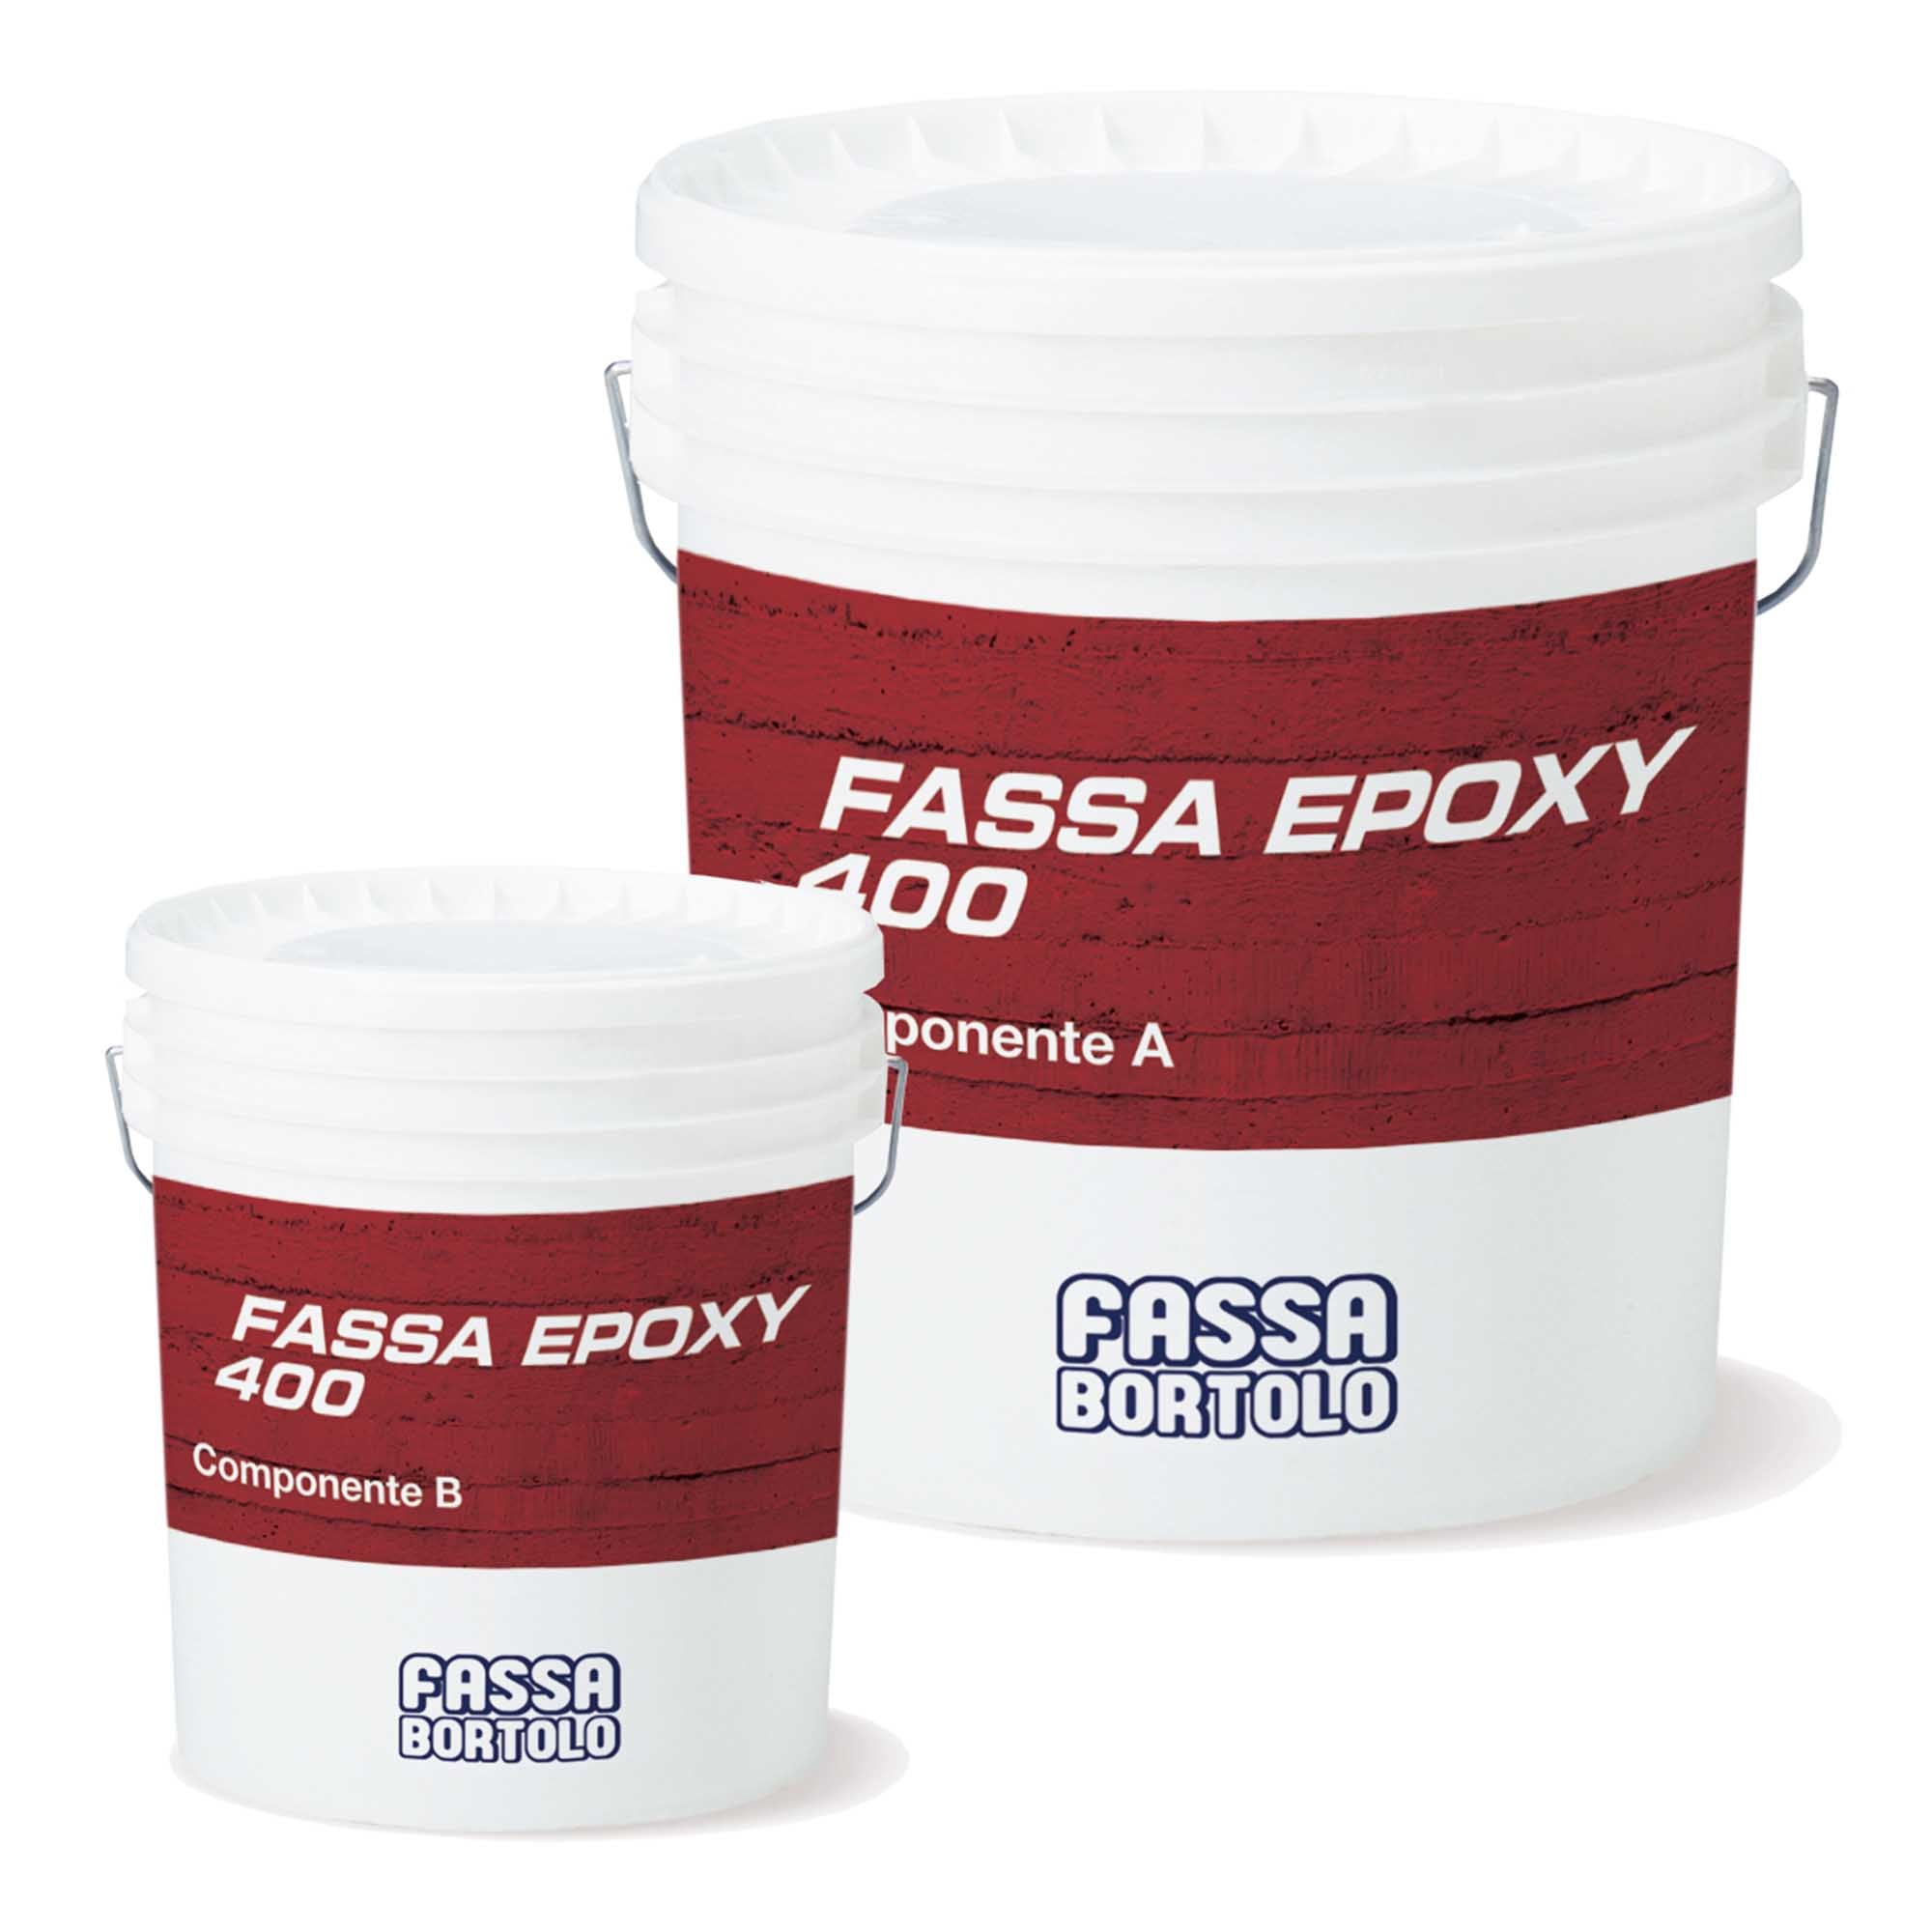 Fassa Epoxy 400